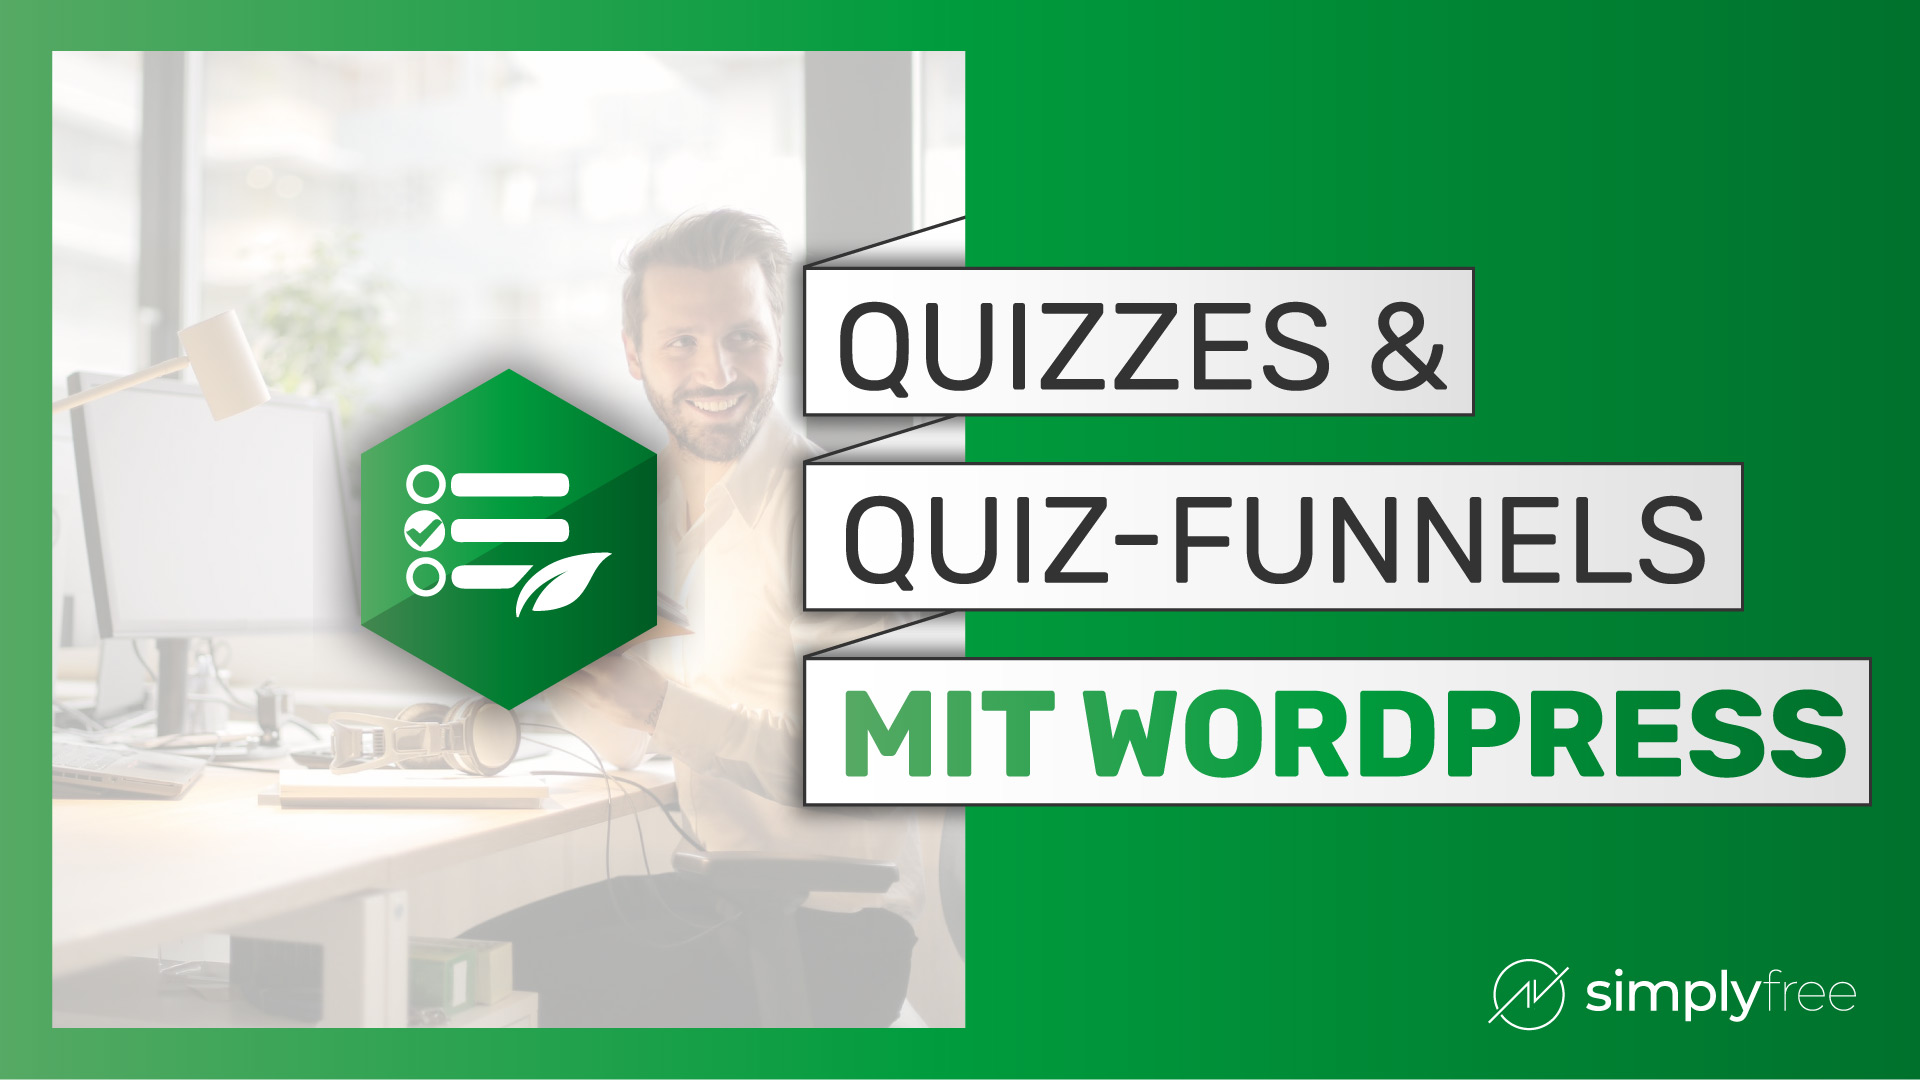 Quizzes & Quiz-funnels zu deiner Wordpress-Website hinzufügen – Freelancer werden